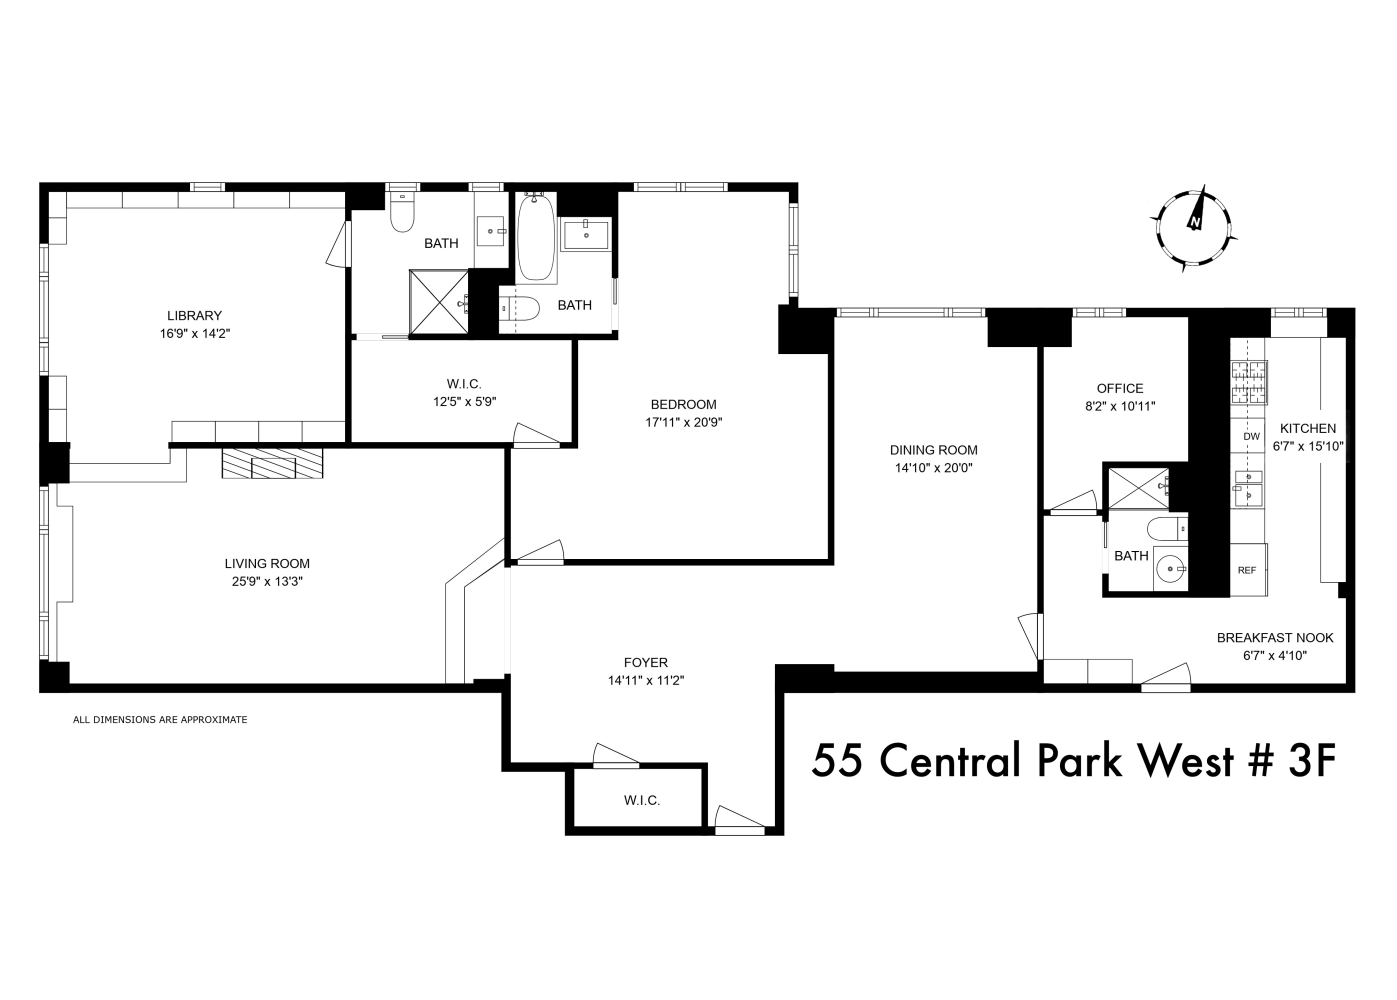 Floorplan for 55 Central Park, 3F